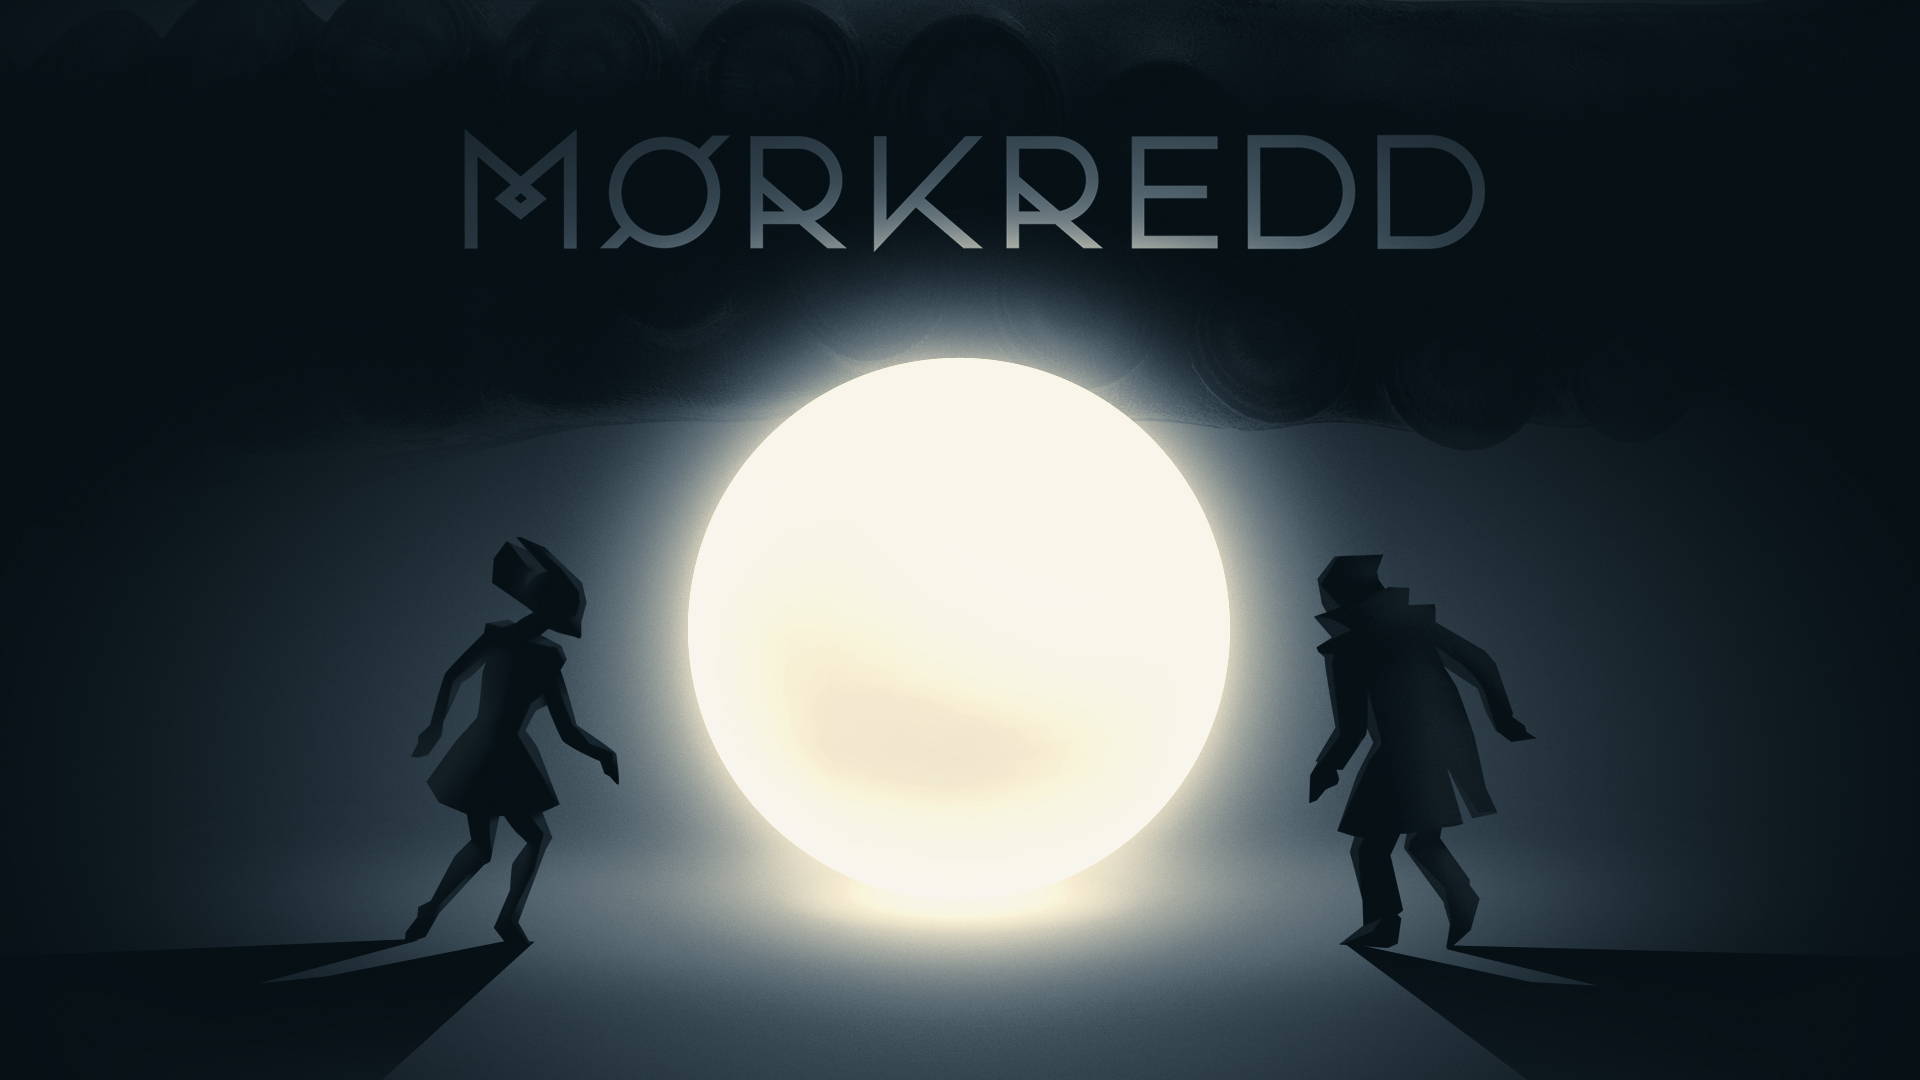 Aspyr oznámil kooperativní hru Morkredd pro konzole Xbox